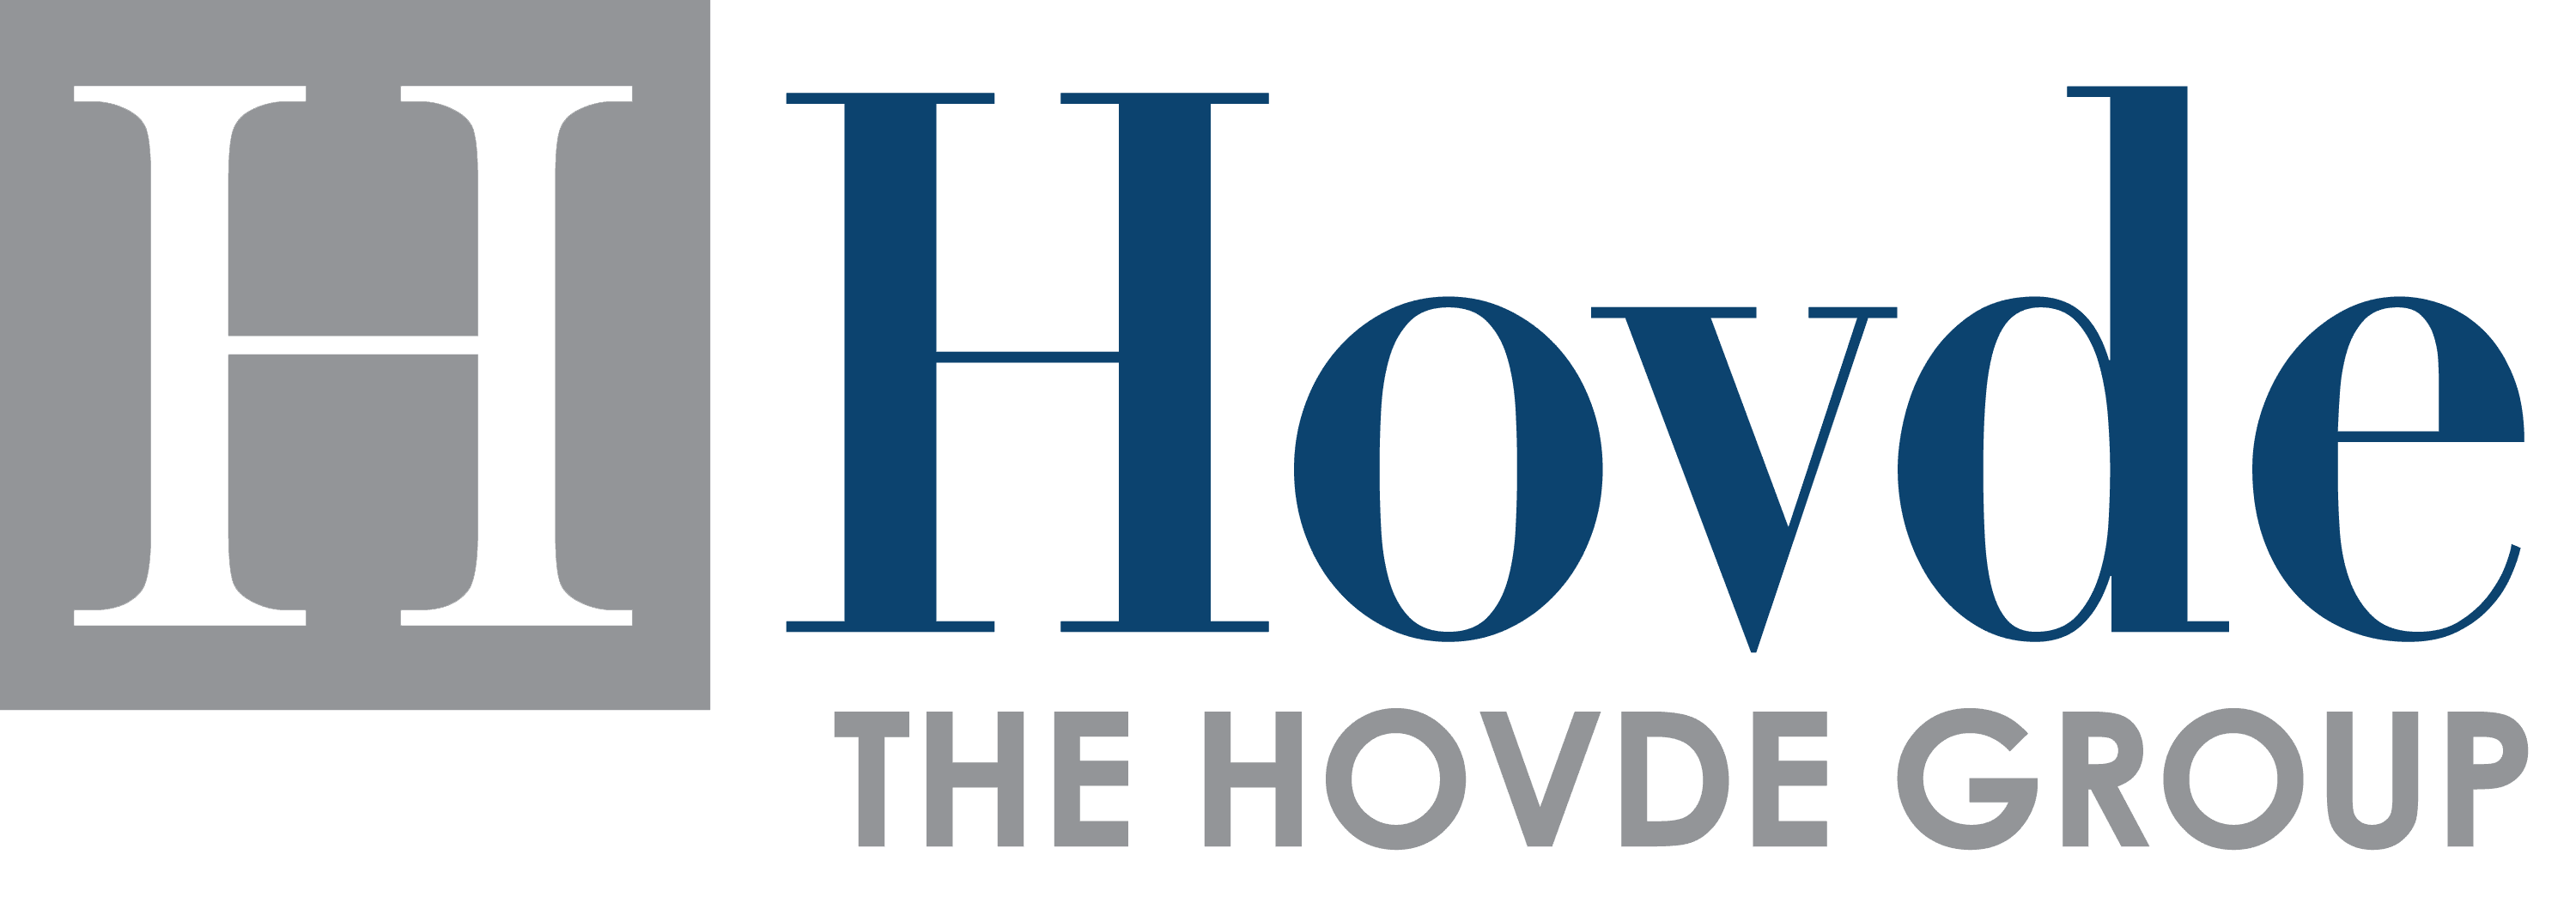 Hovde_Logo.png